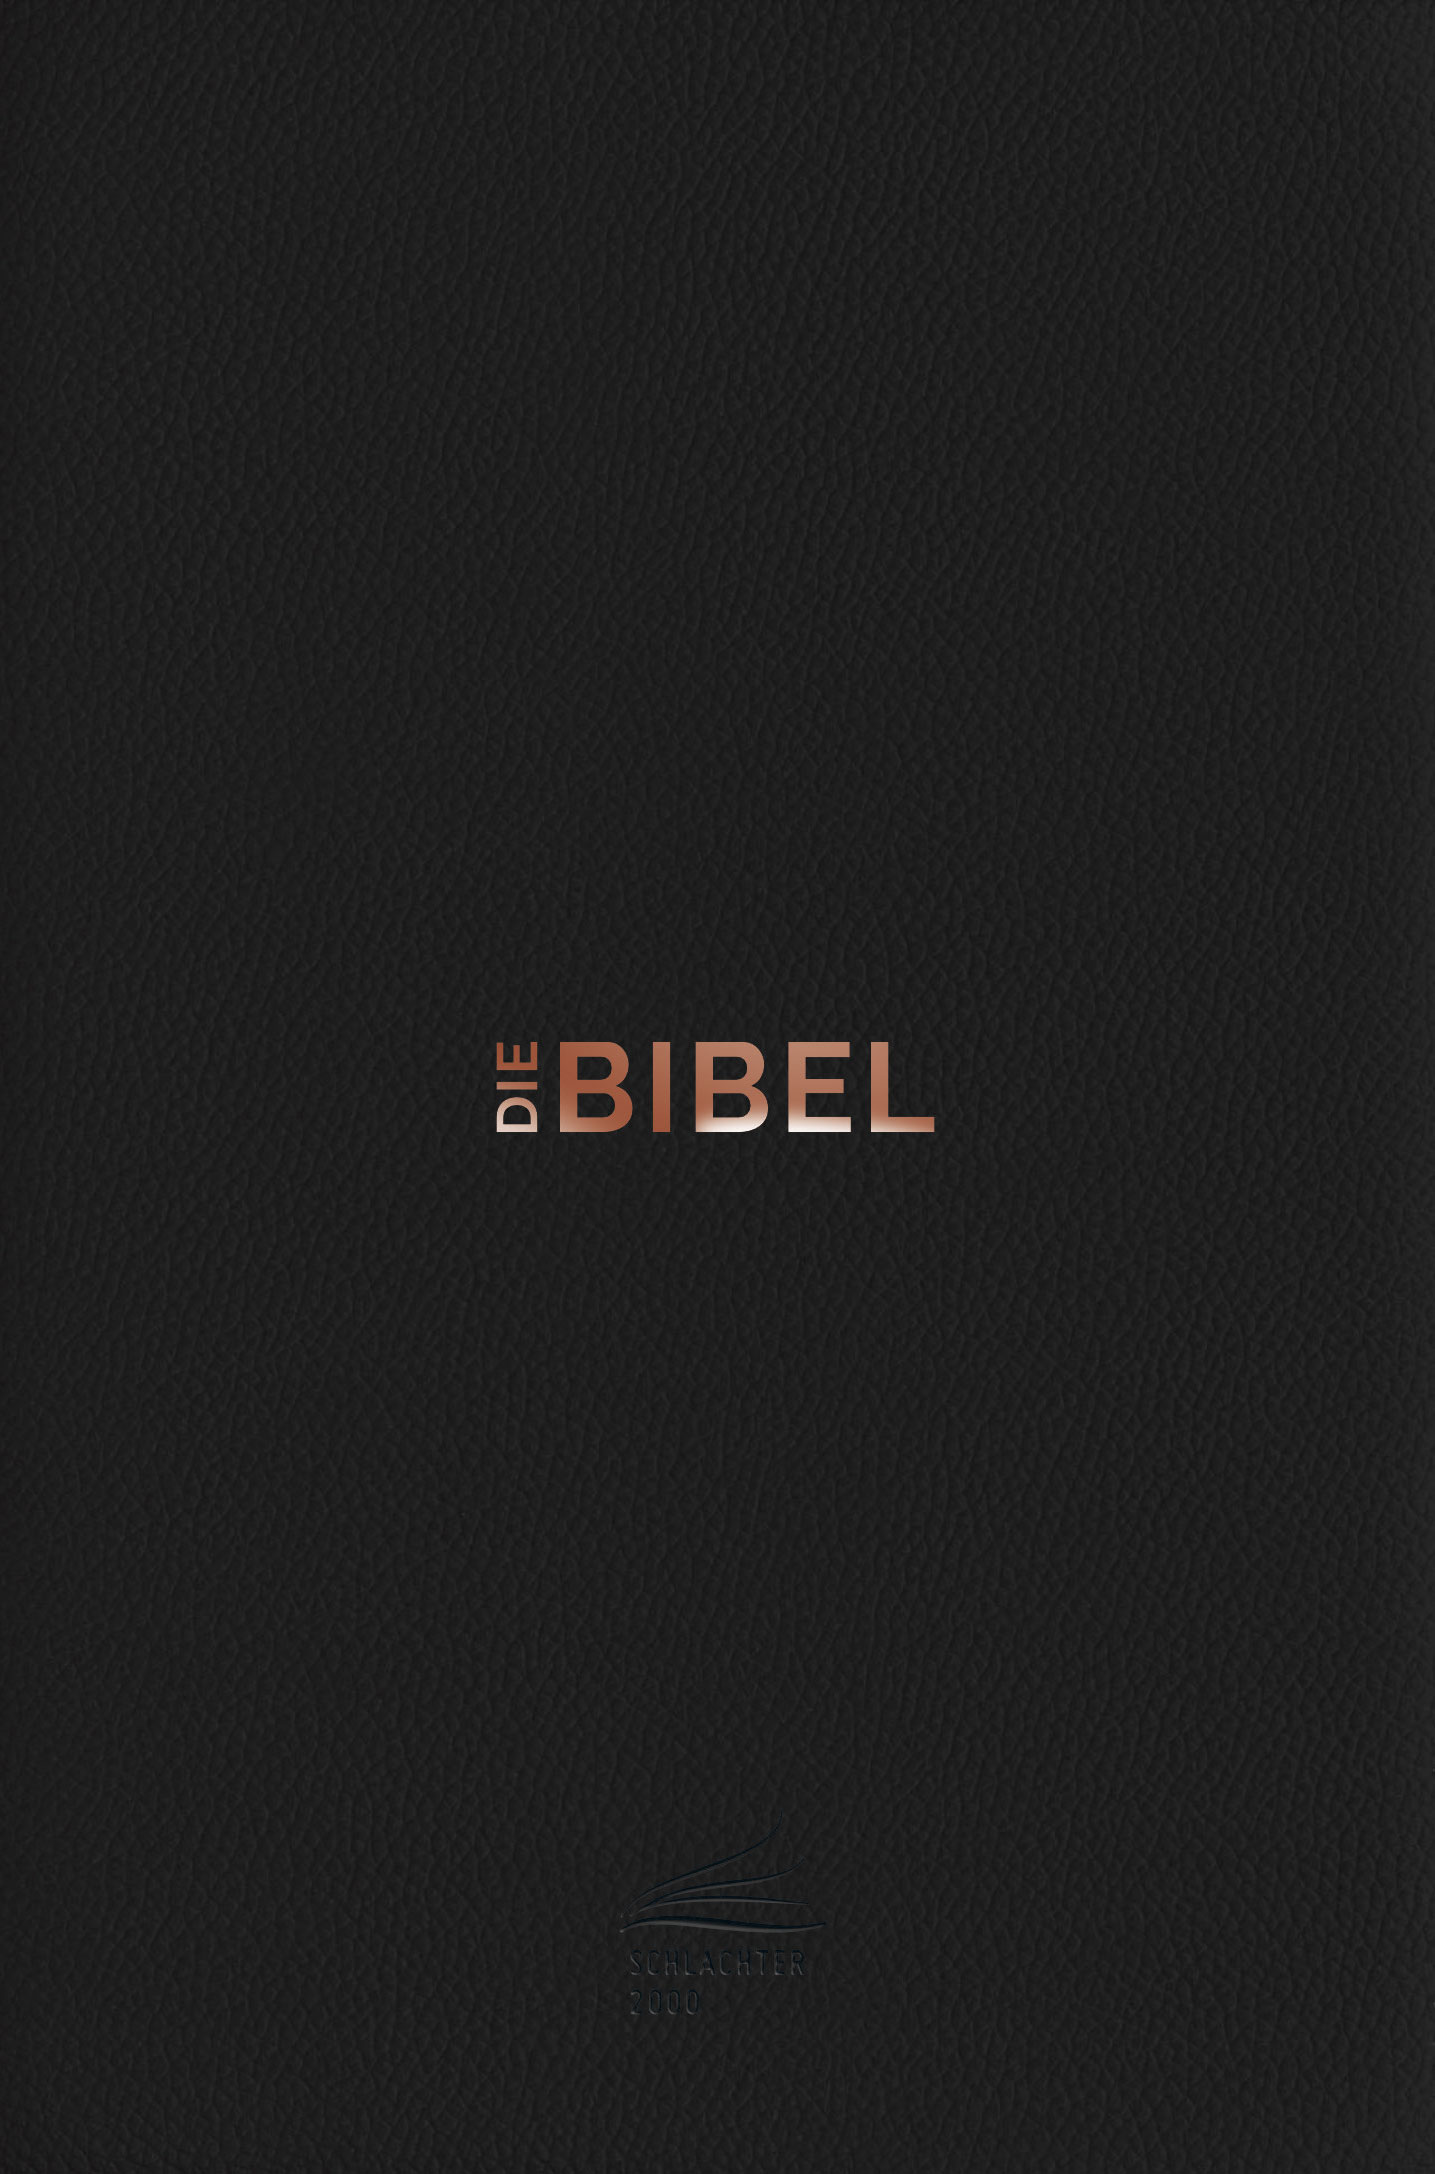 Schlachter 2000 Bibel – Taschenausgabe (Softcover, schwarz, Leder-Einband, Farbschnitt)